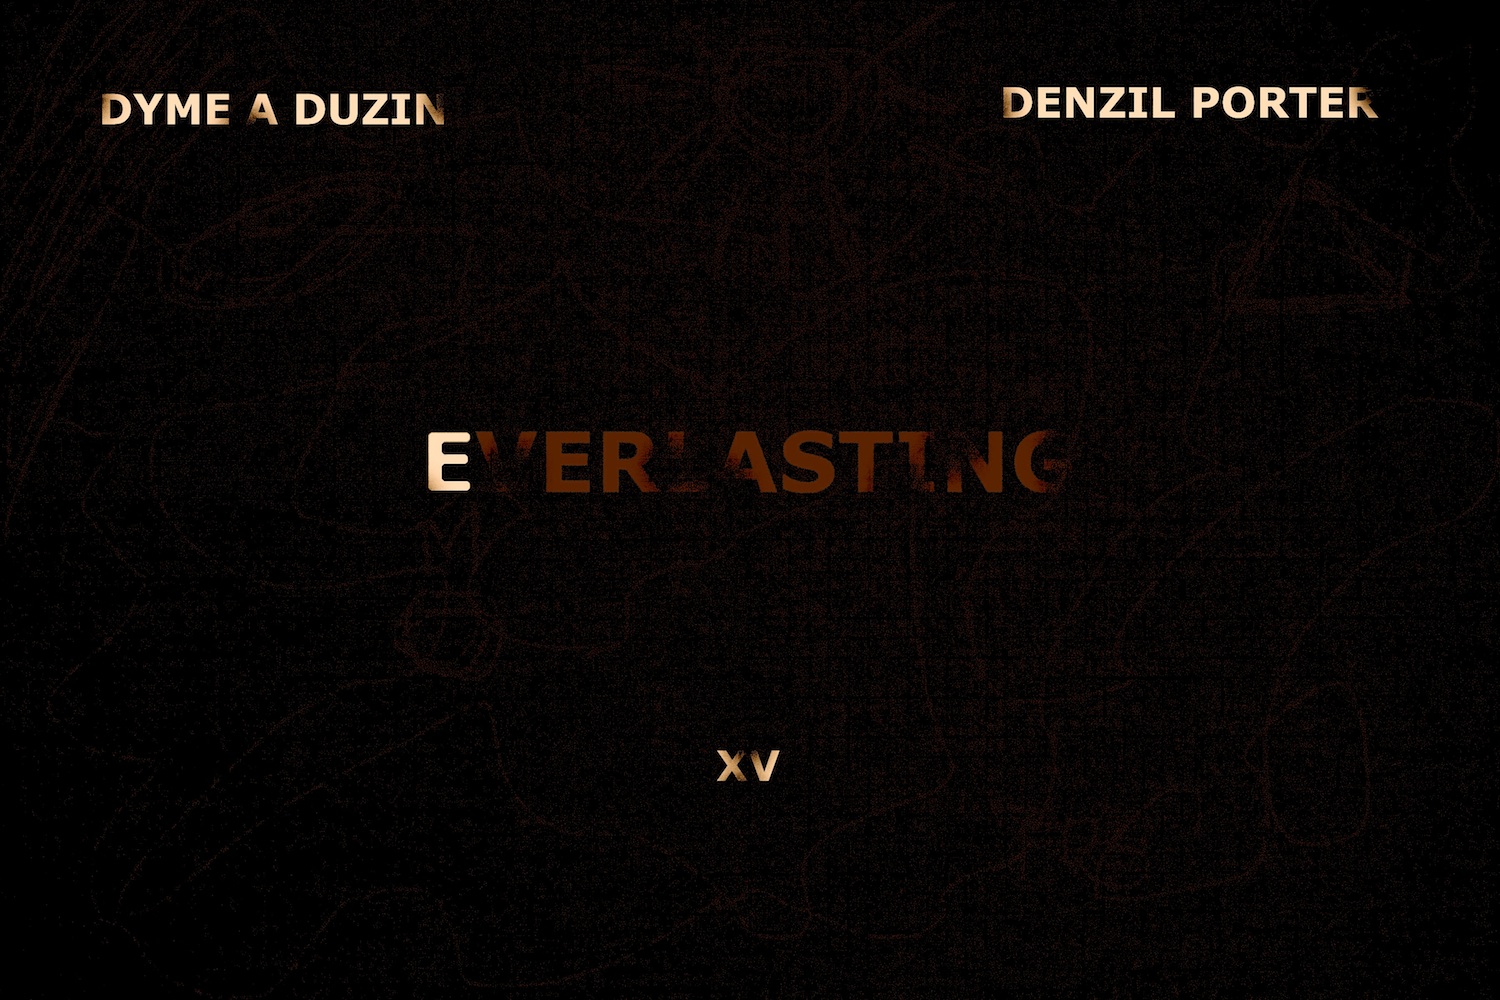 Omen – EverLasting (con Dyme A Duzin, XV, Denzil Porter & TS Rose)